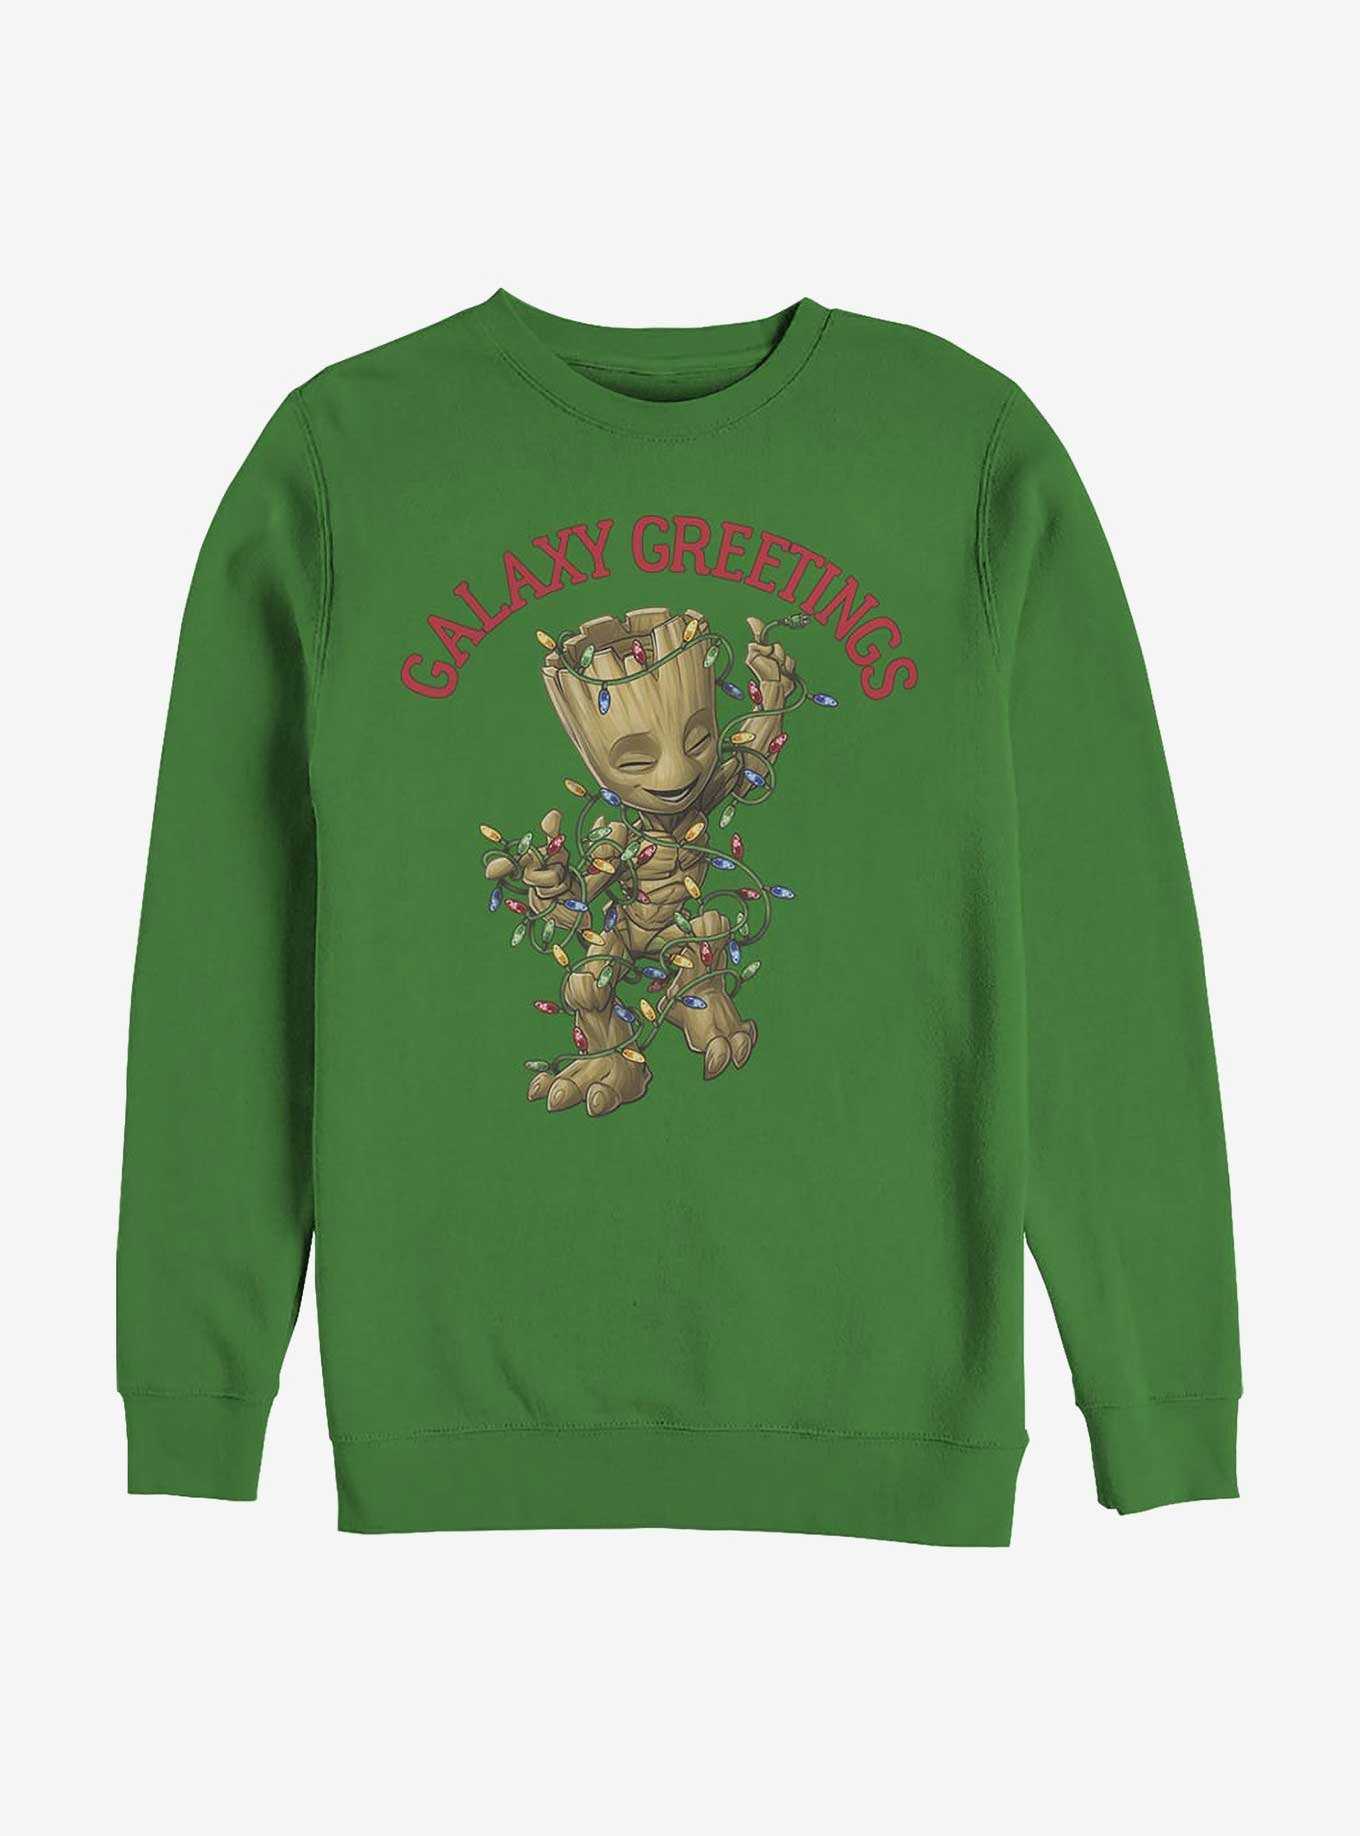 Marvel Galaxy Greetings Baby Groot Crew Sweatshirt, , hi-res